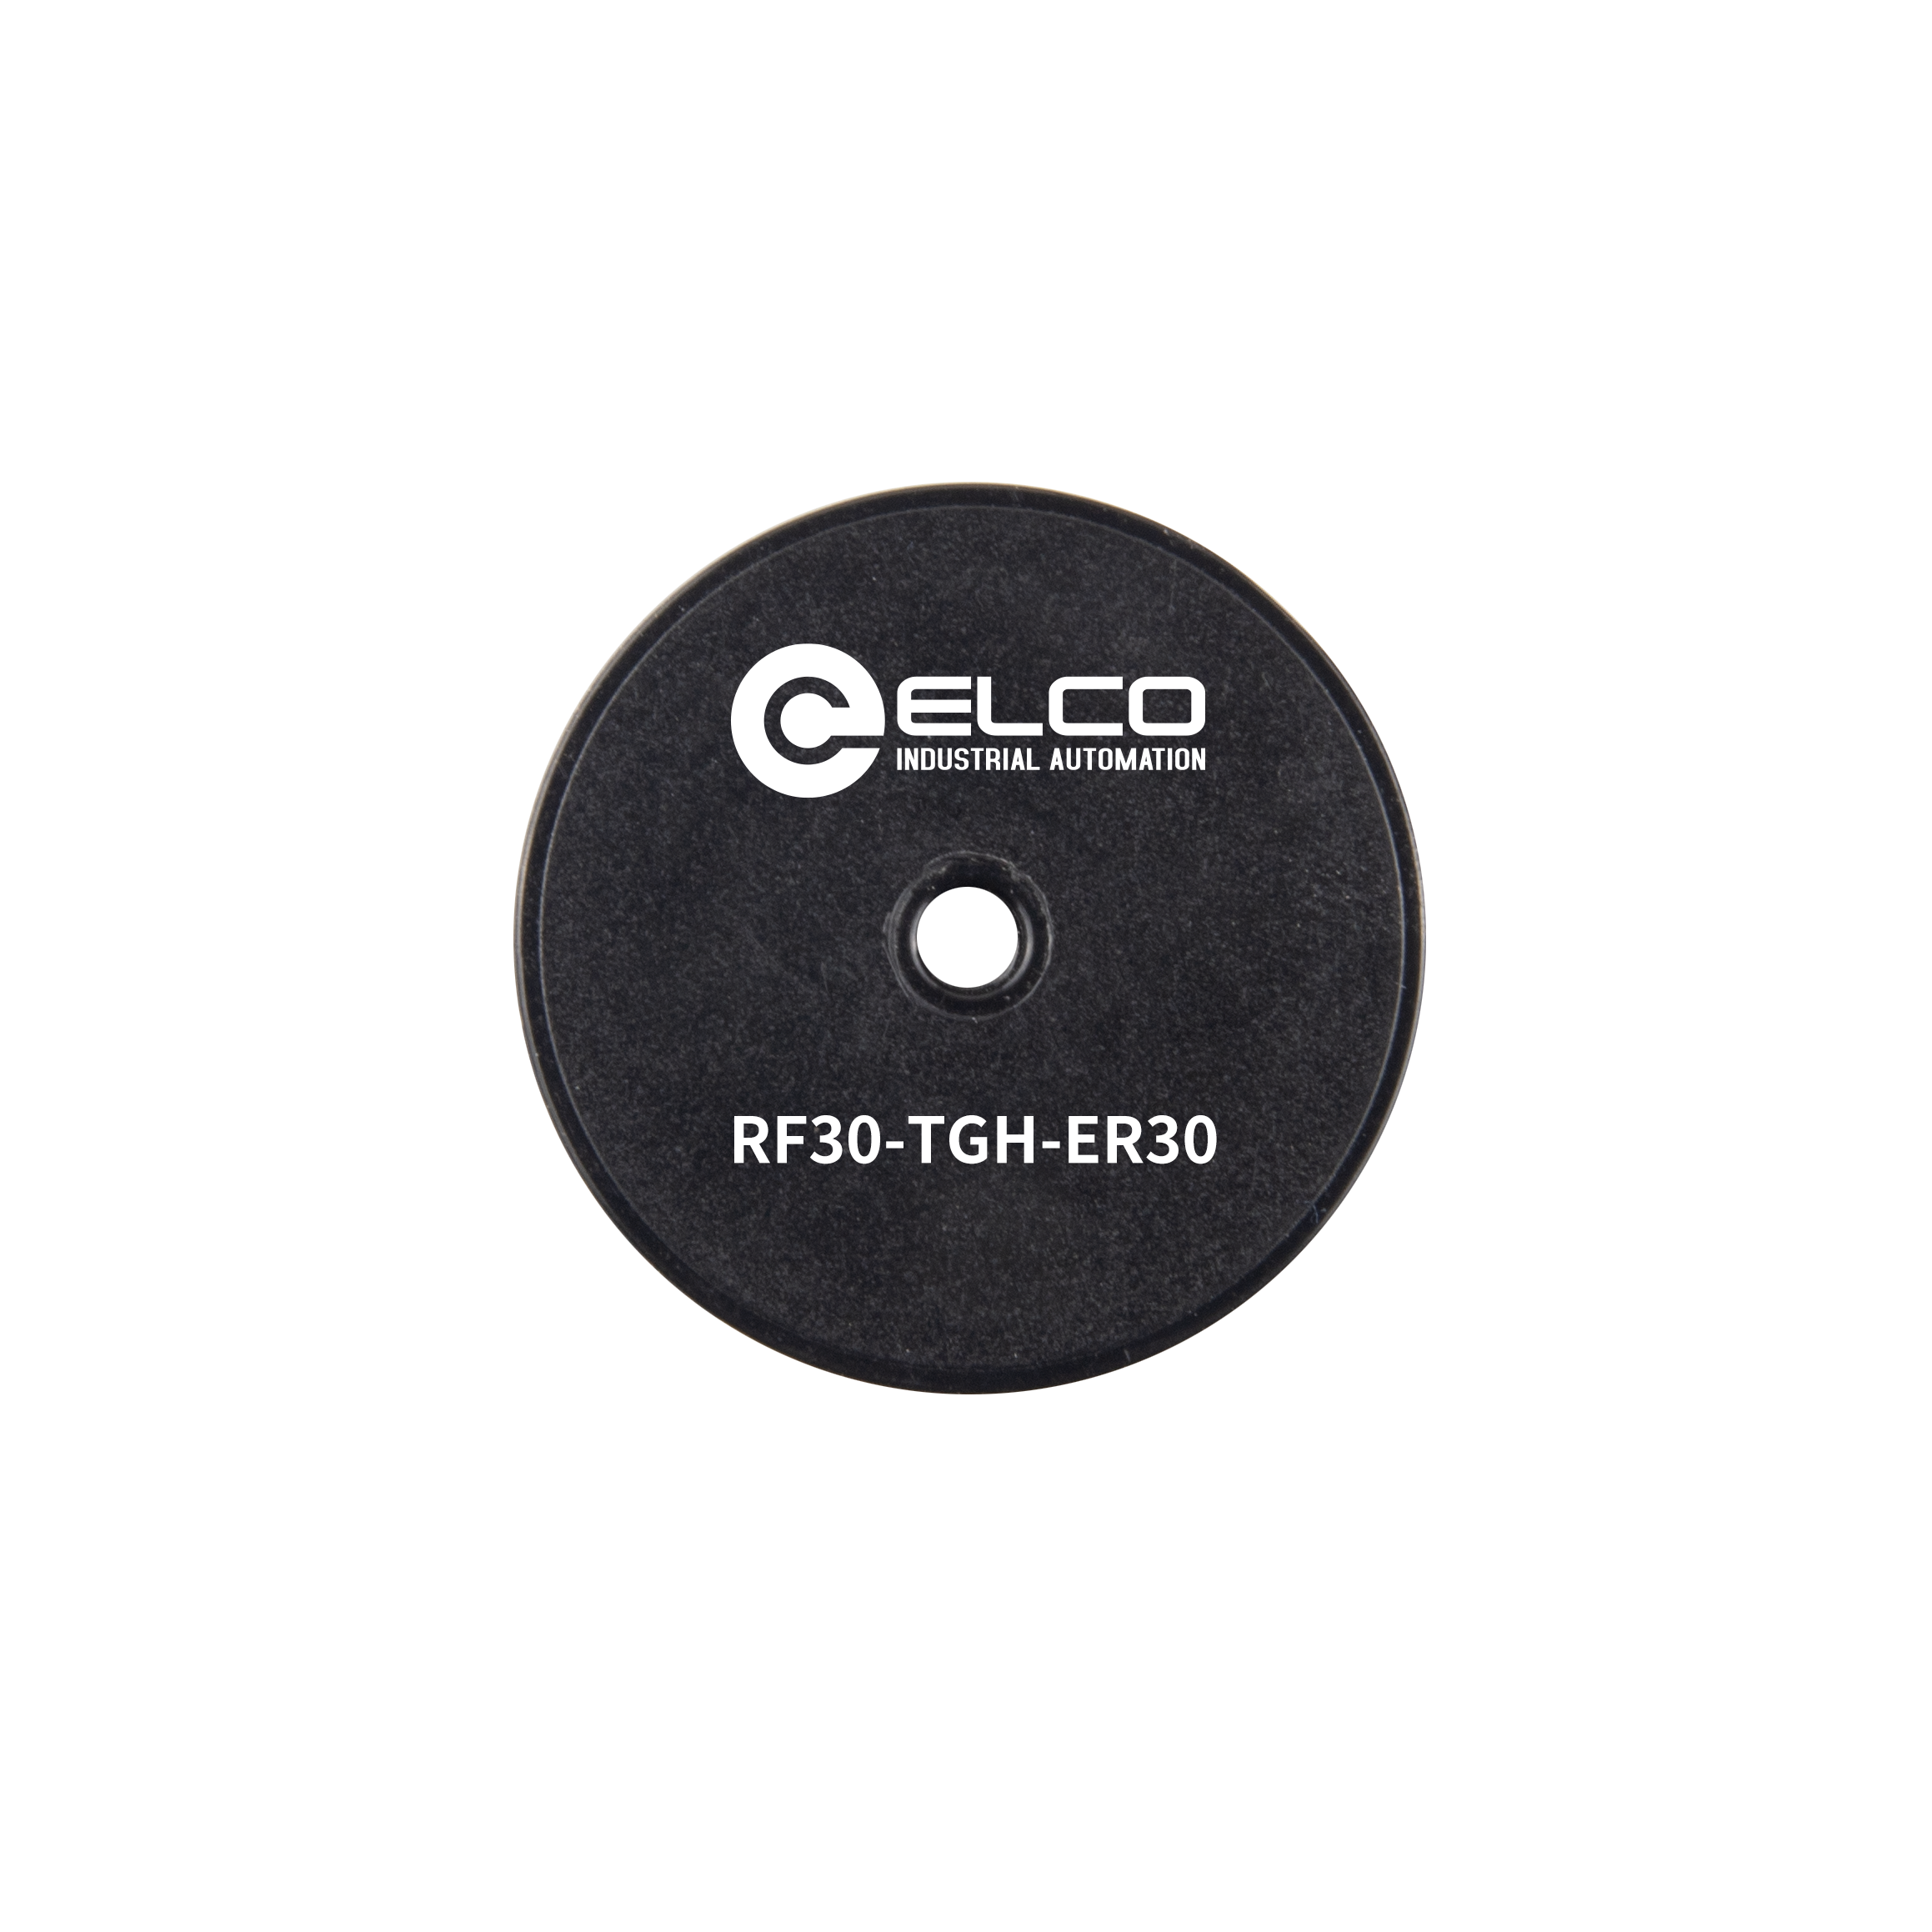 RF30-TGH-ER30